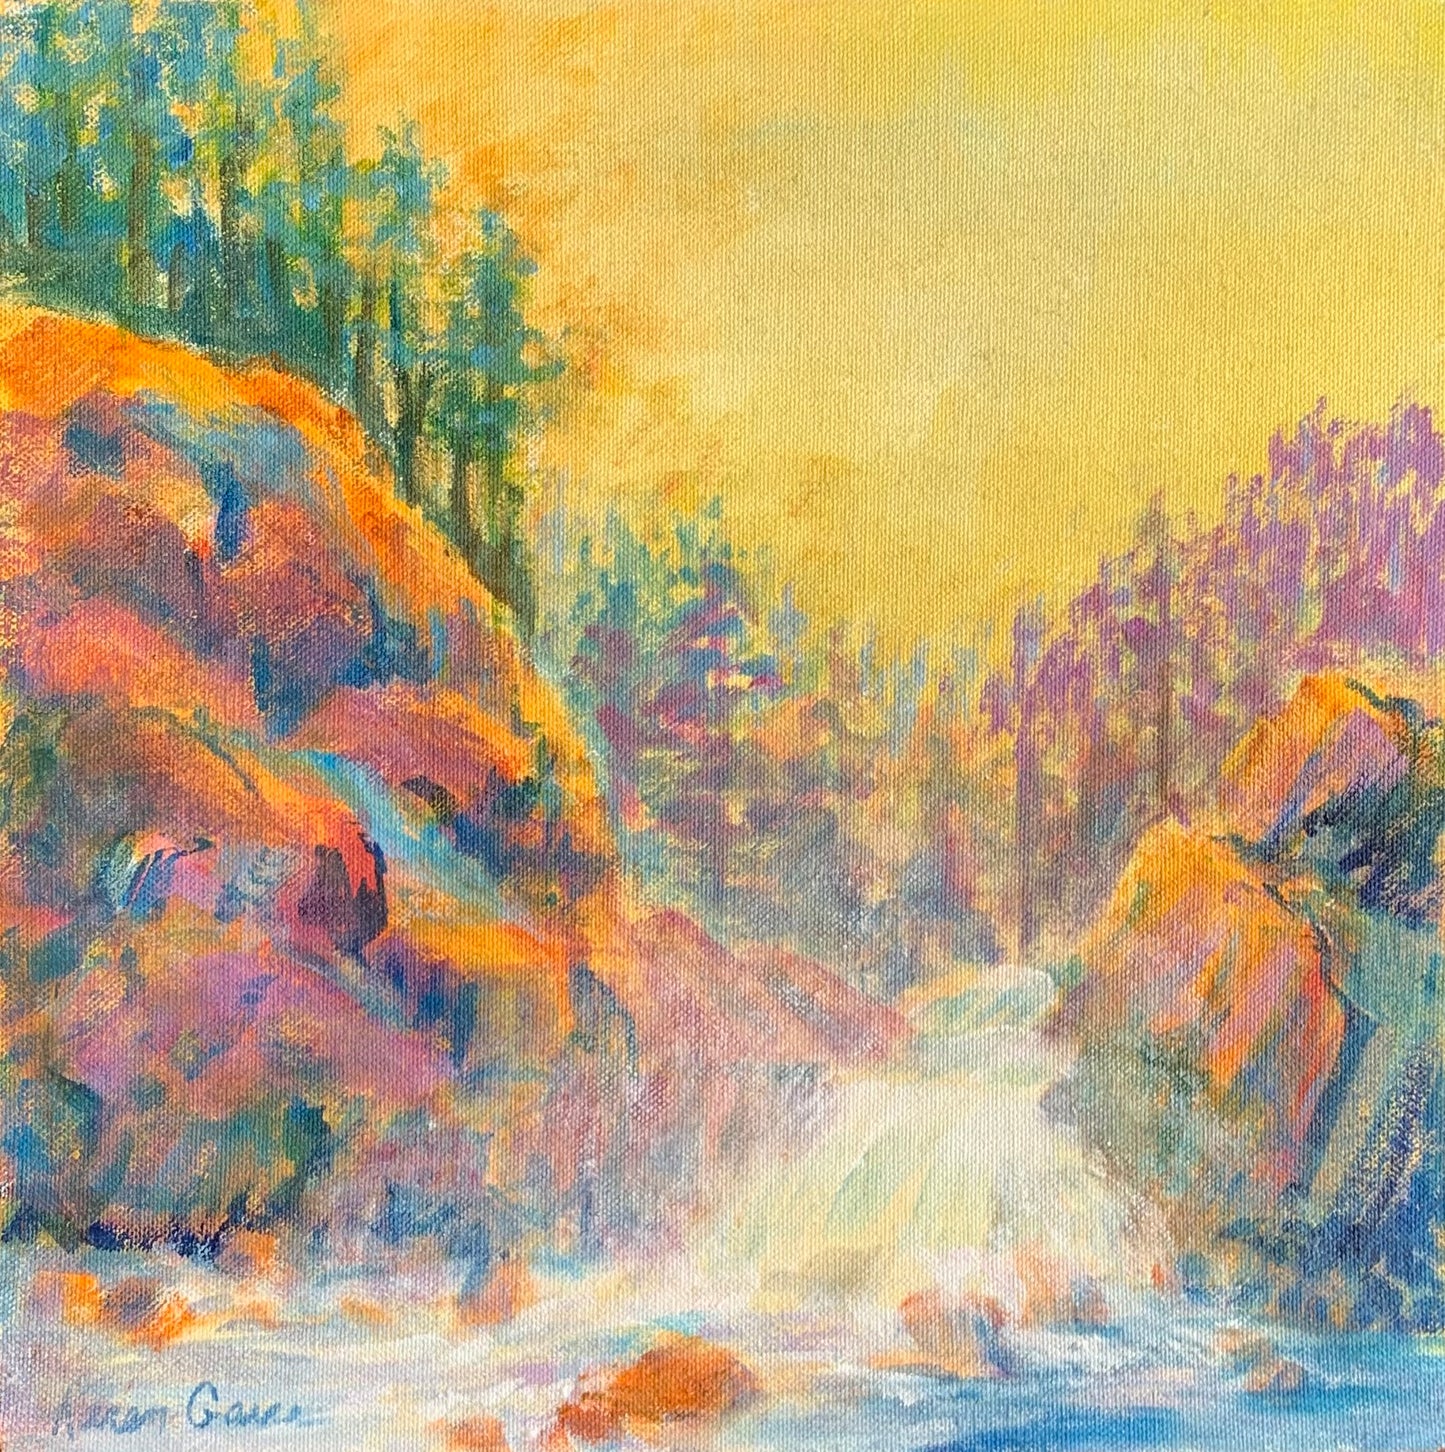 KarenG- Painting- "Firehole Falls" 12x12